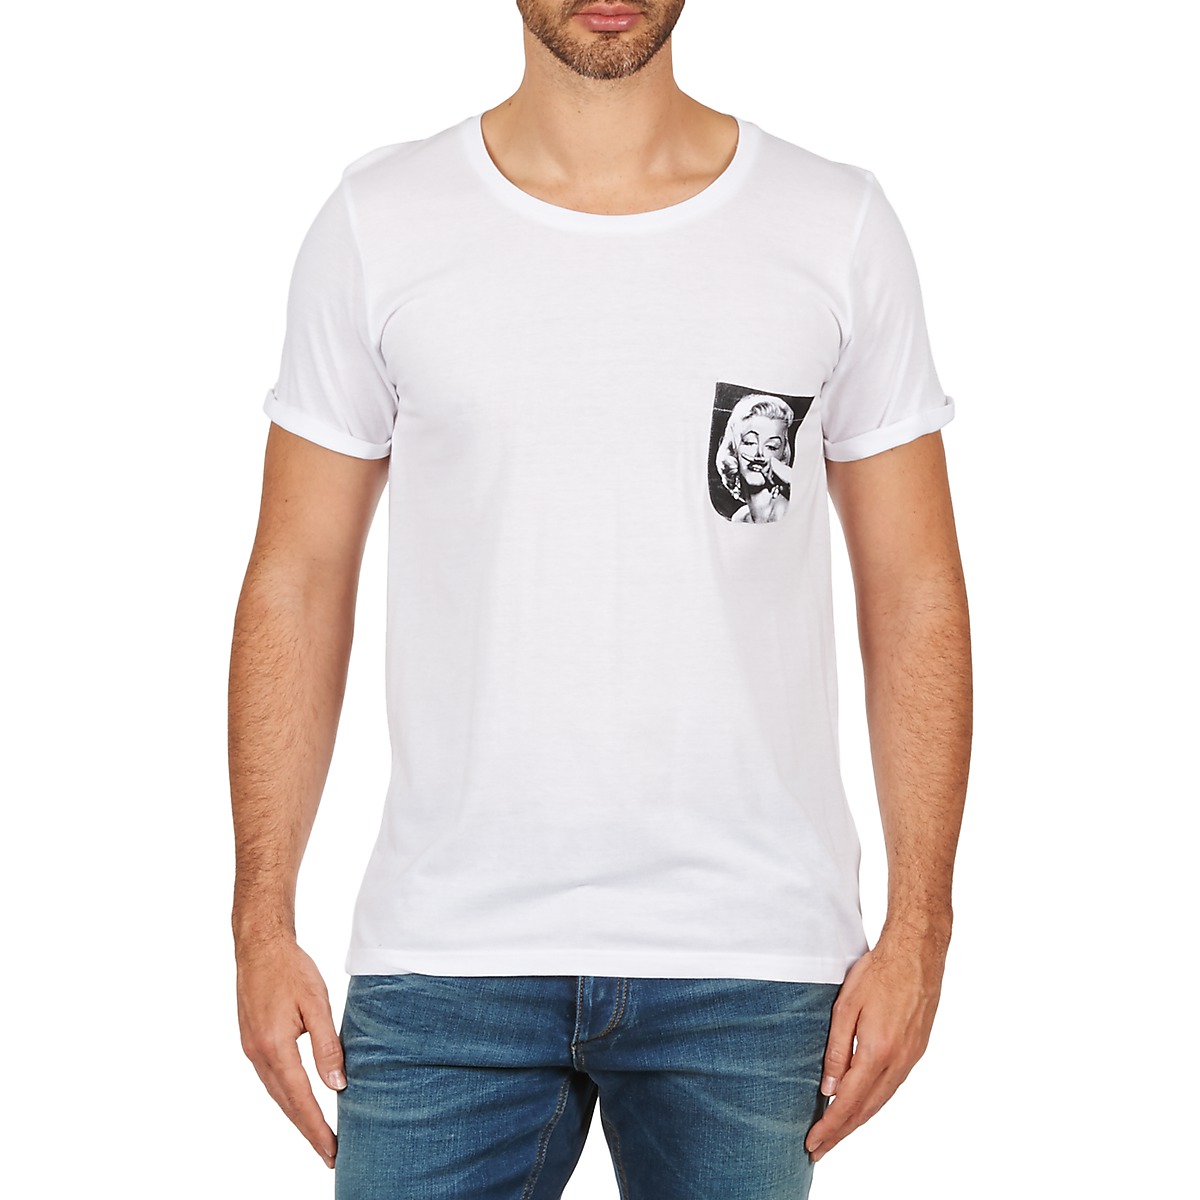 Oblačila Moški Majice s kratkimi rokavi Eleven Paris MARYLINPOCK MEN Bela